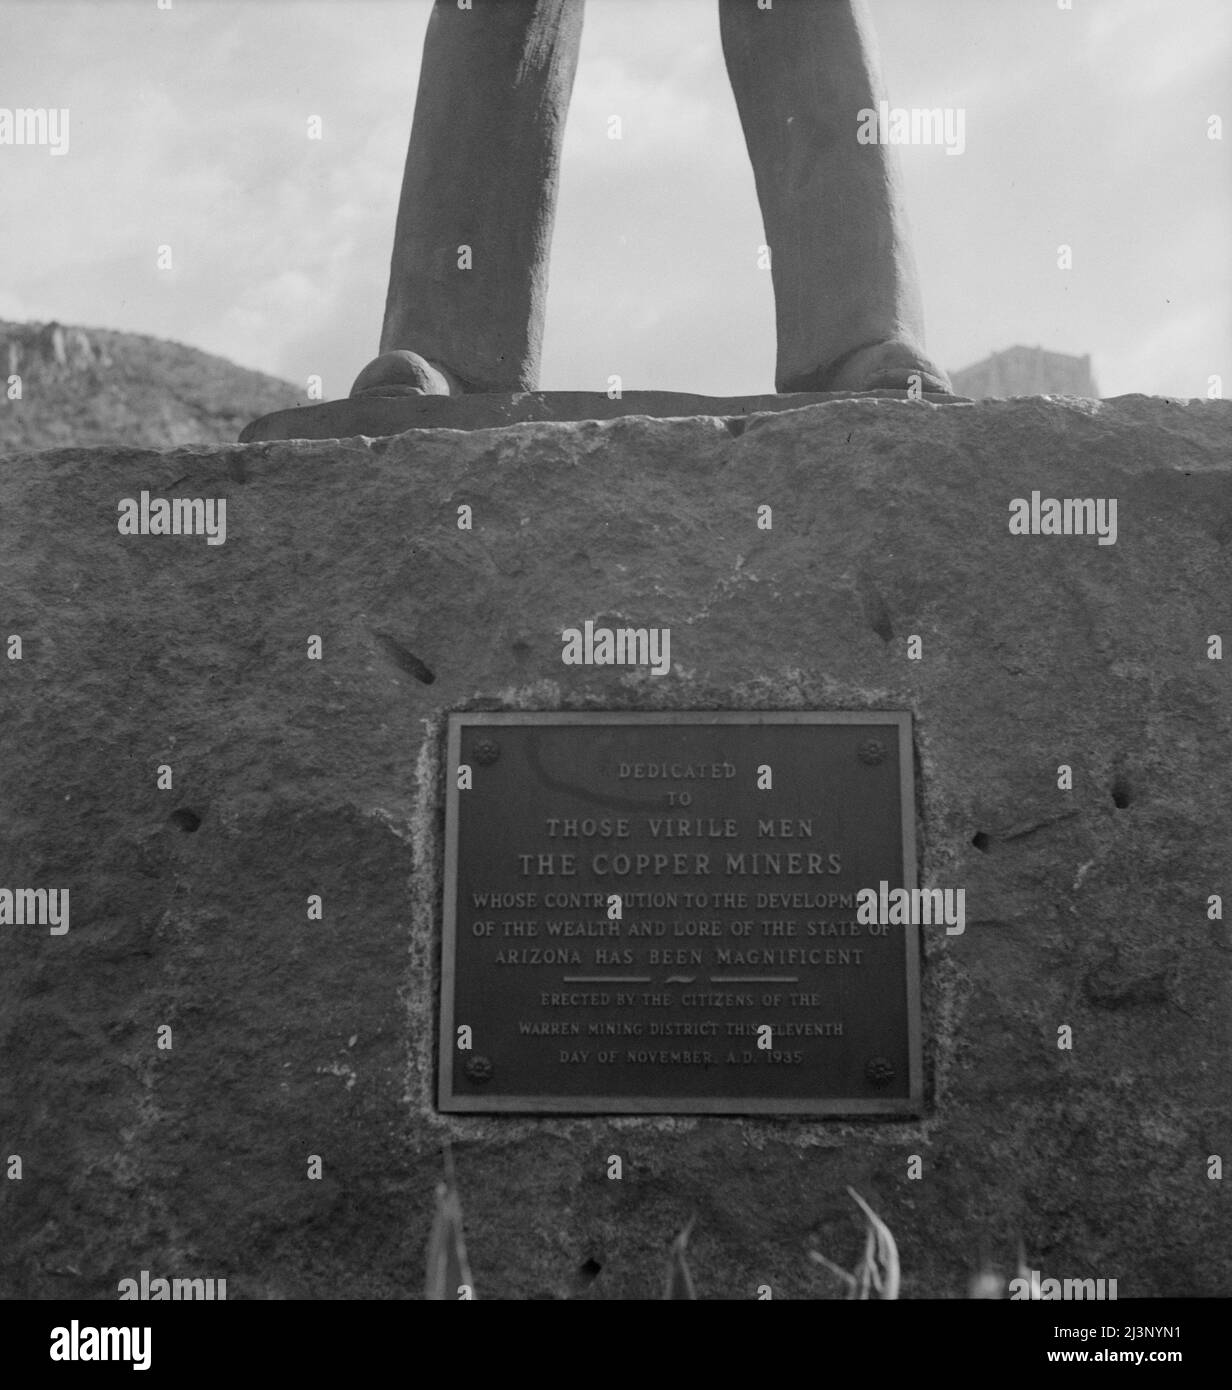 Inschrift auf einem Denkmal, das den Kupferminern von Arizona gewidmet ist. Bisbee, Arizona. ['den männlichen Männern gewidmet, sind die Kupferminer, deren Beitrag zur Entwicklung des Reichtums und der Überlieferung des Staates Arizona großartig war - errichtet von den Bürgern des Bergbaubezirks Warren an diesem elften Tag des Novembers, 1935 n. Chr.']. Stockfoto